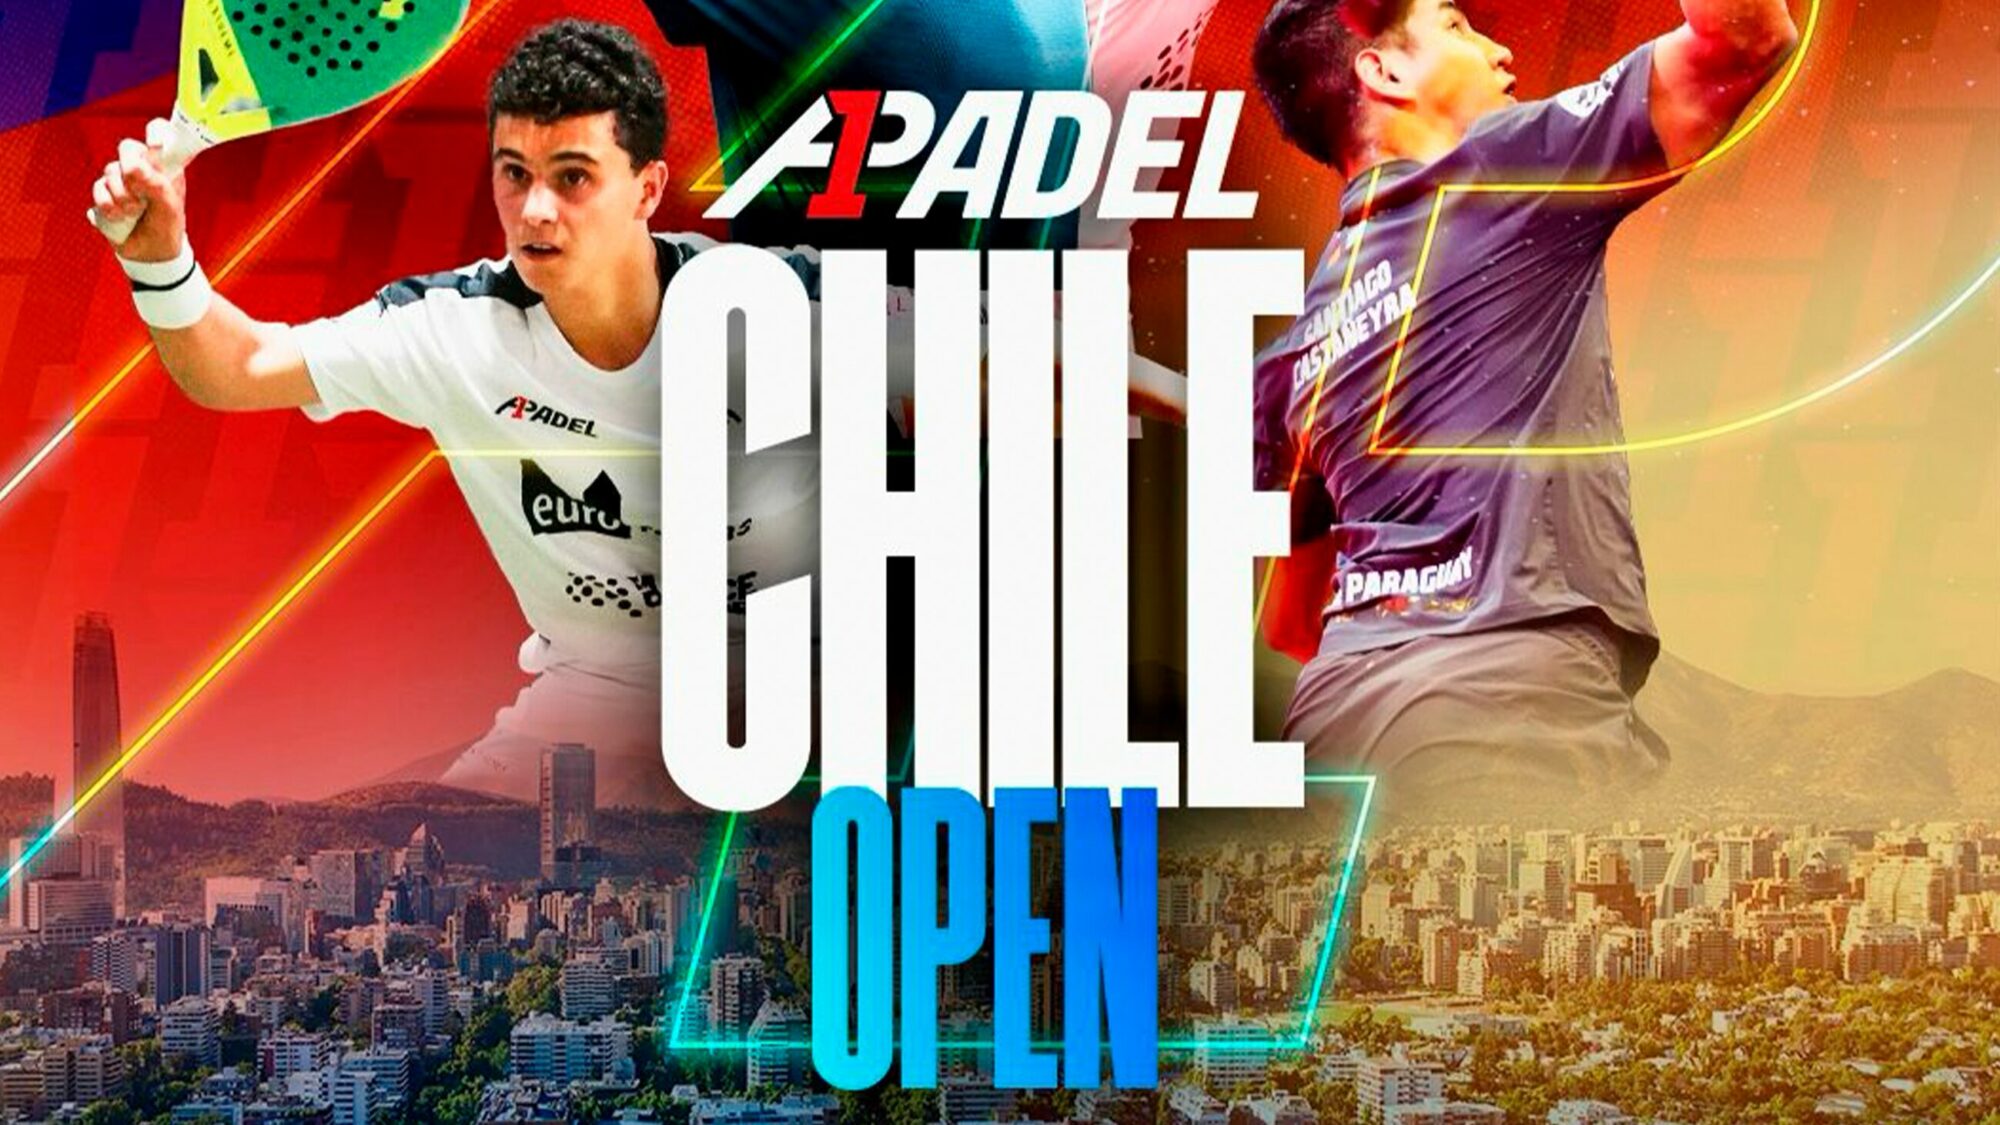 A1 Chile Open – Huvuddragningen avslöjad